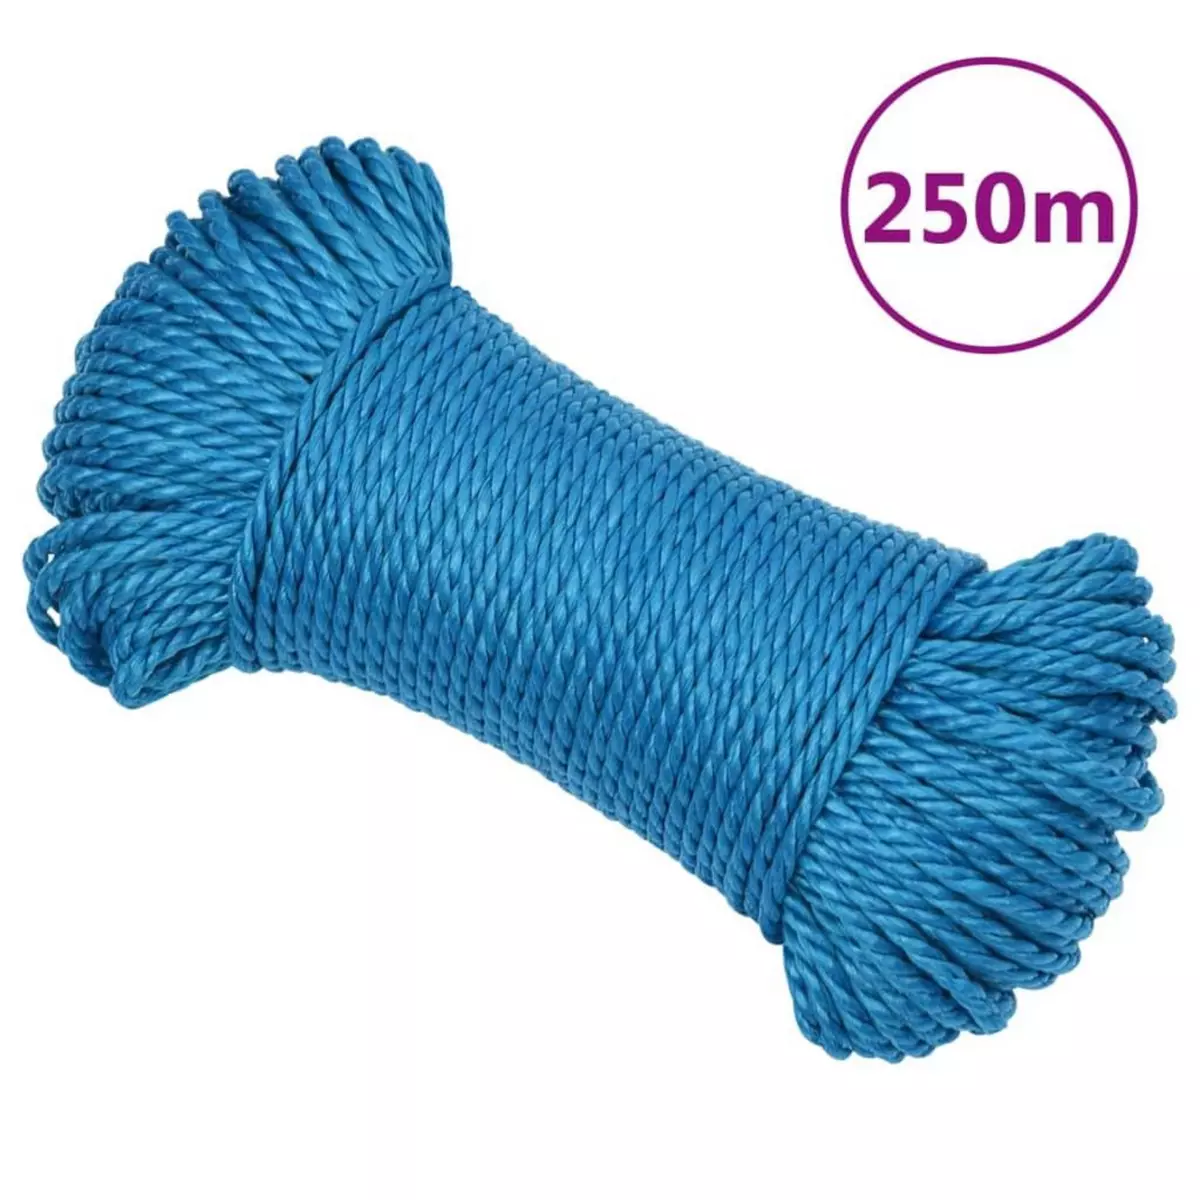 VIDAXL Corde de travail Bleu 3 mm 250 m Polypropylene